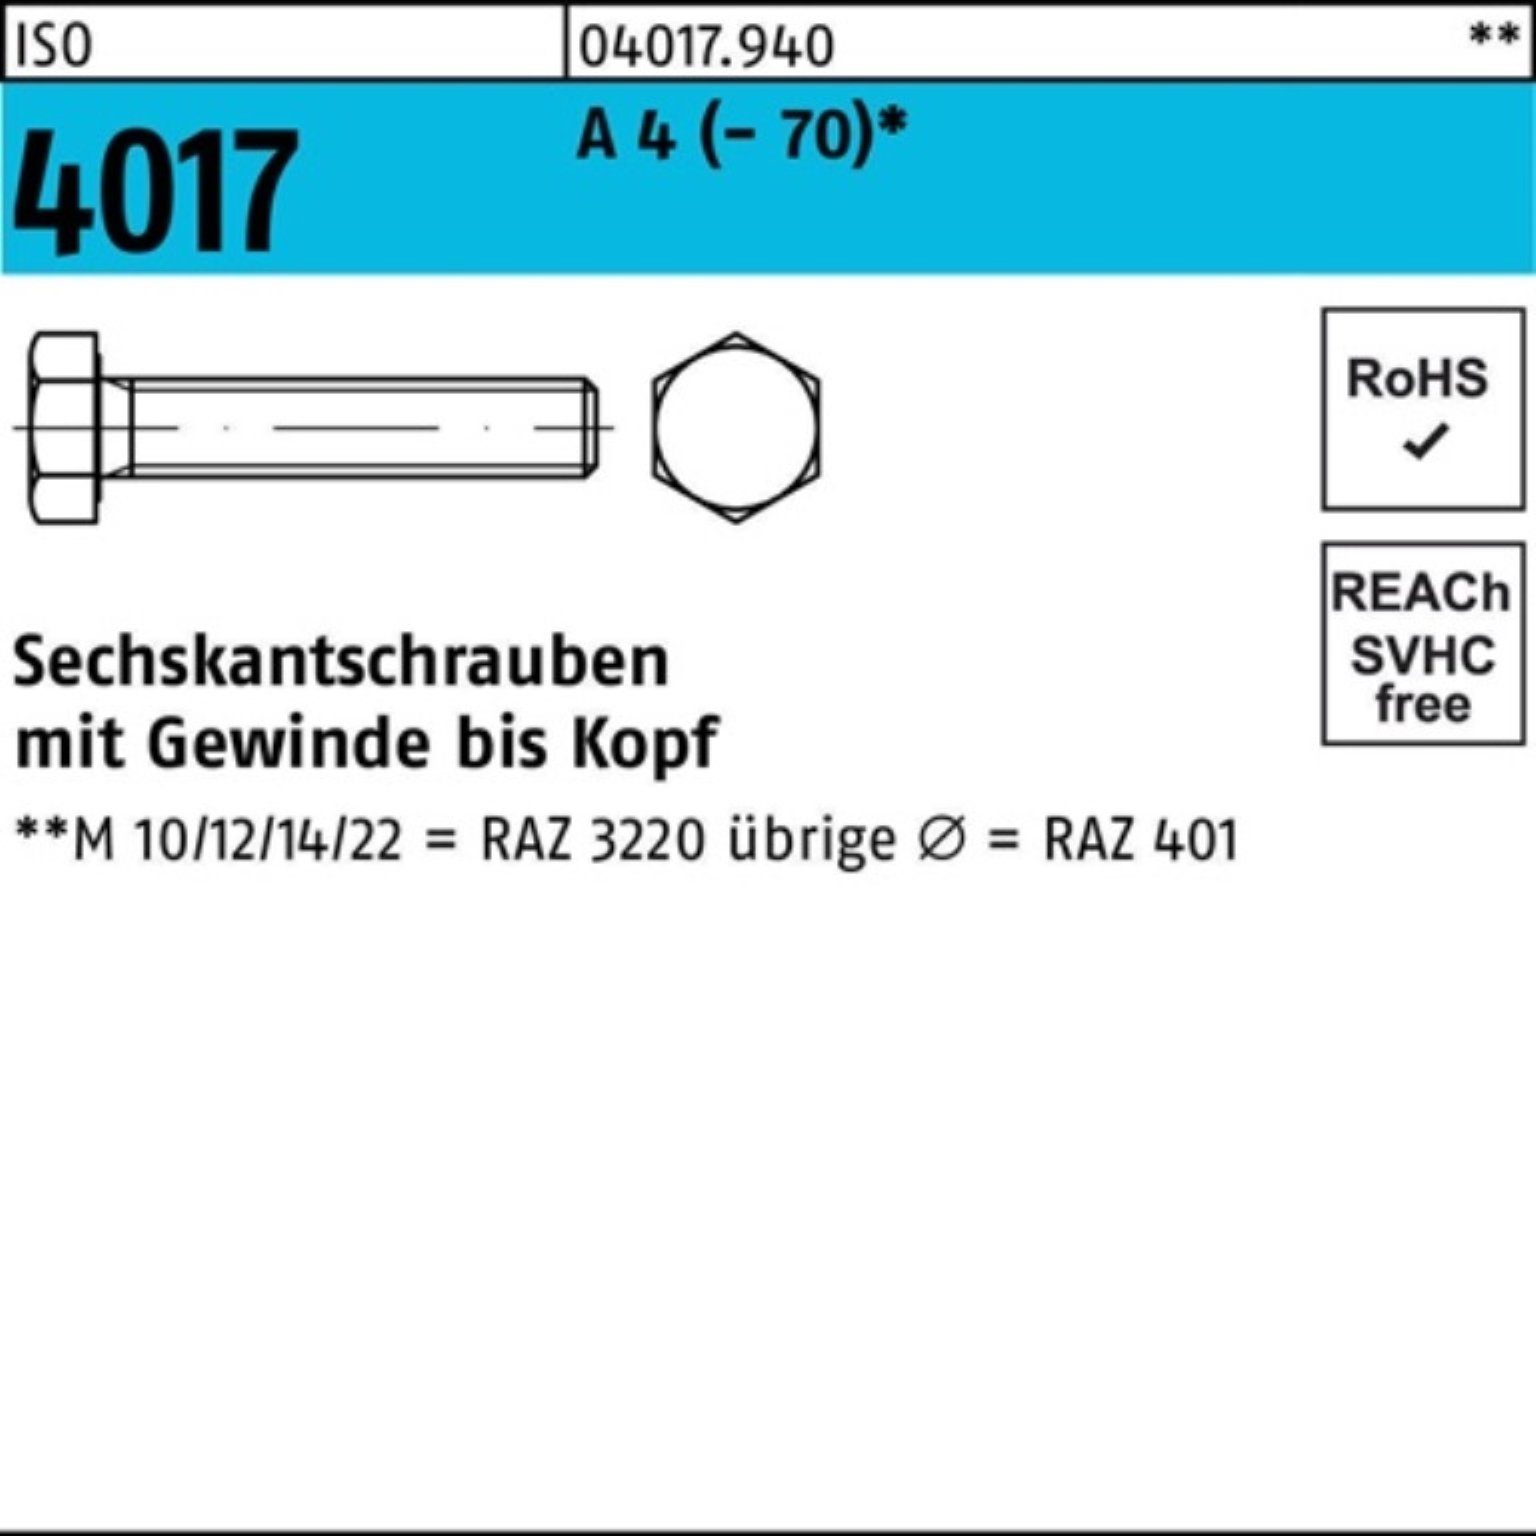 Bufab Sechskantschraube 100er Pack Sechskantschraube ISO ISO VG 4 A Stück 4017 4017 100 M8x 8